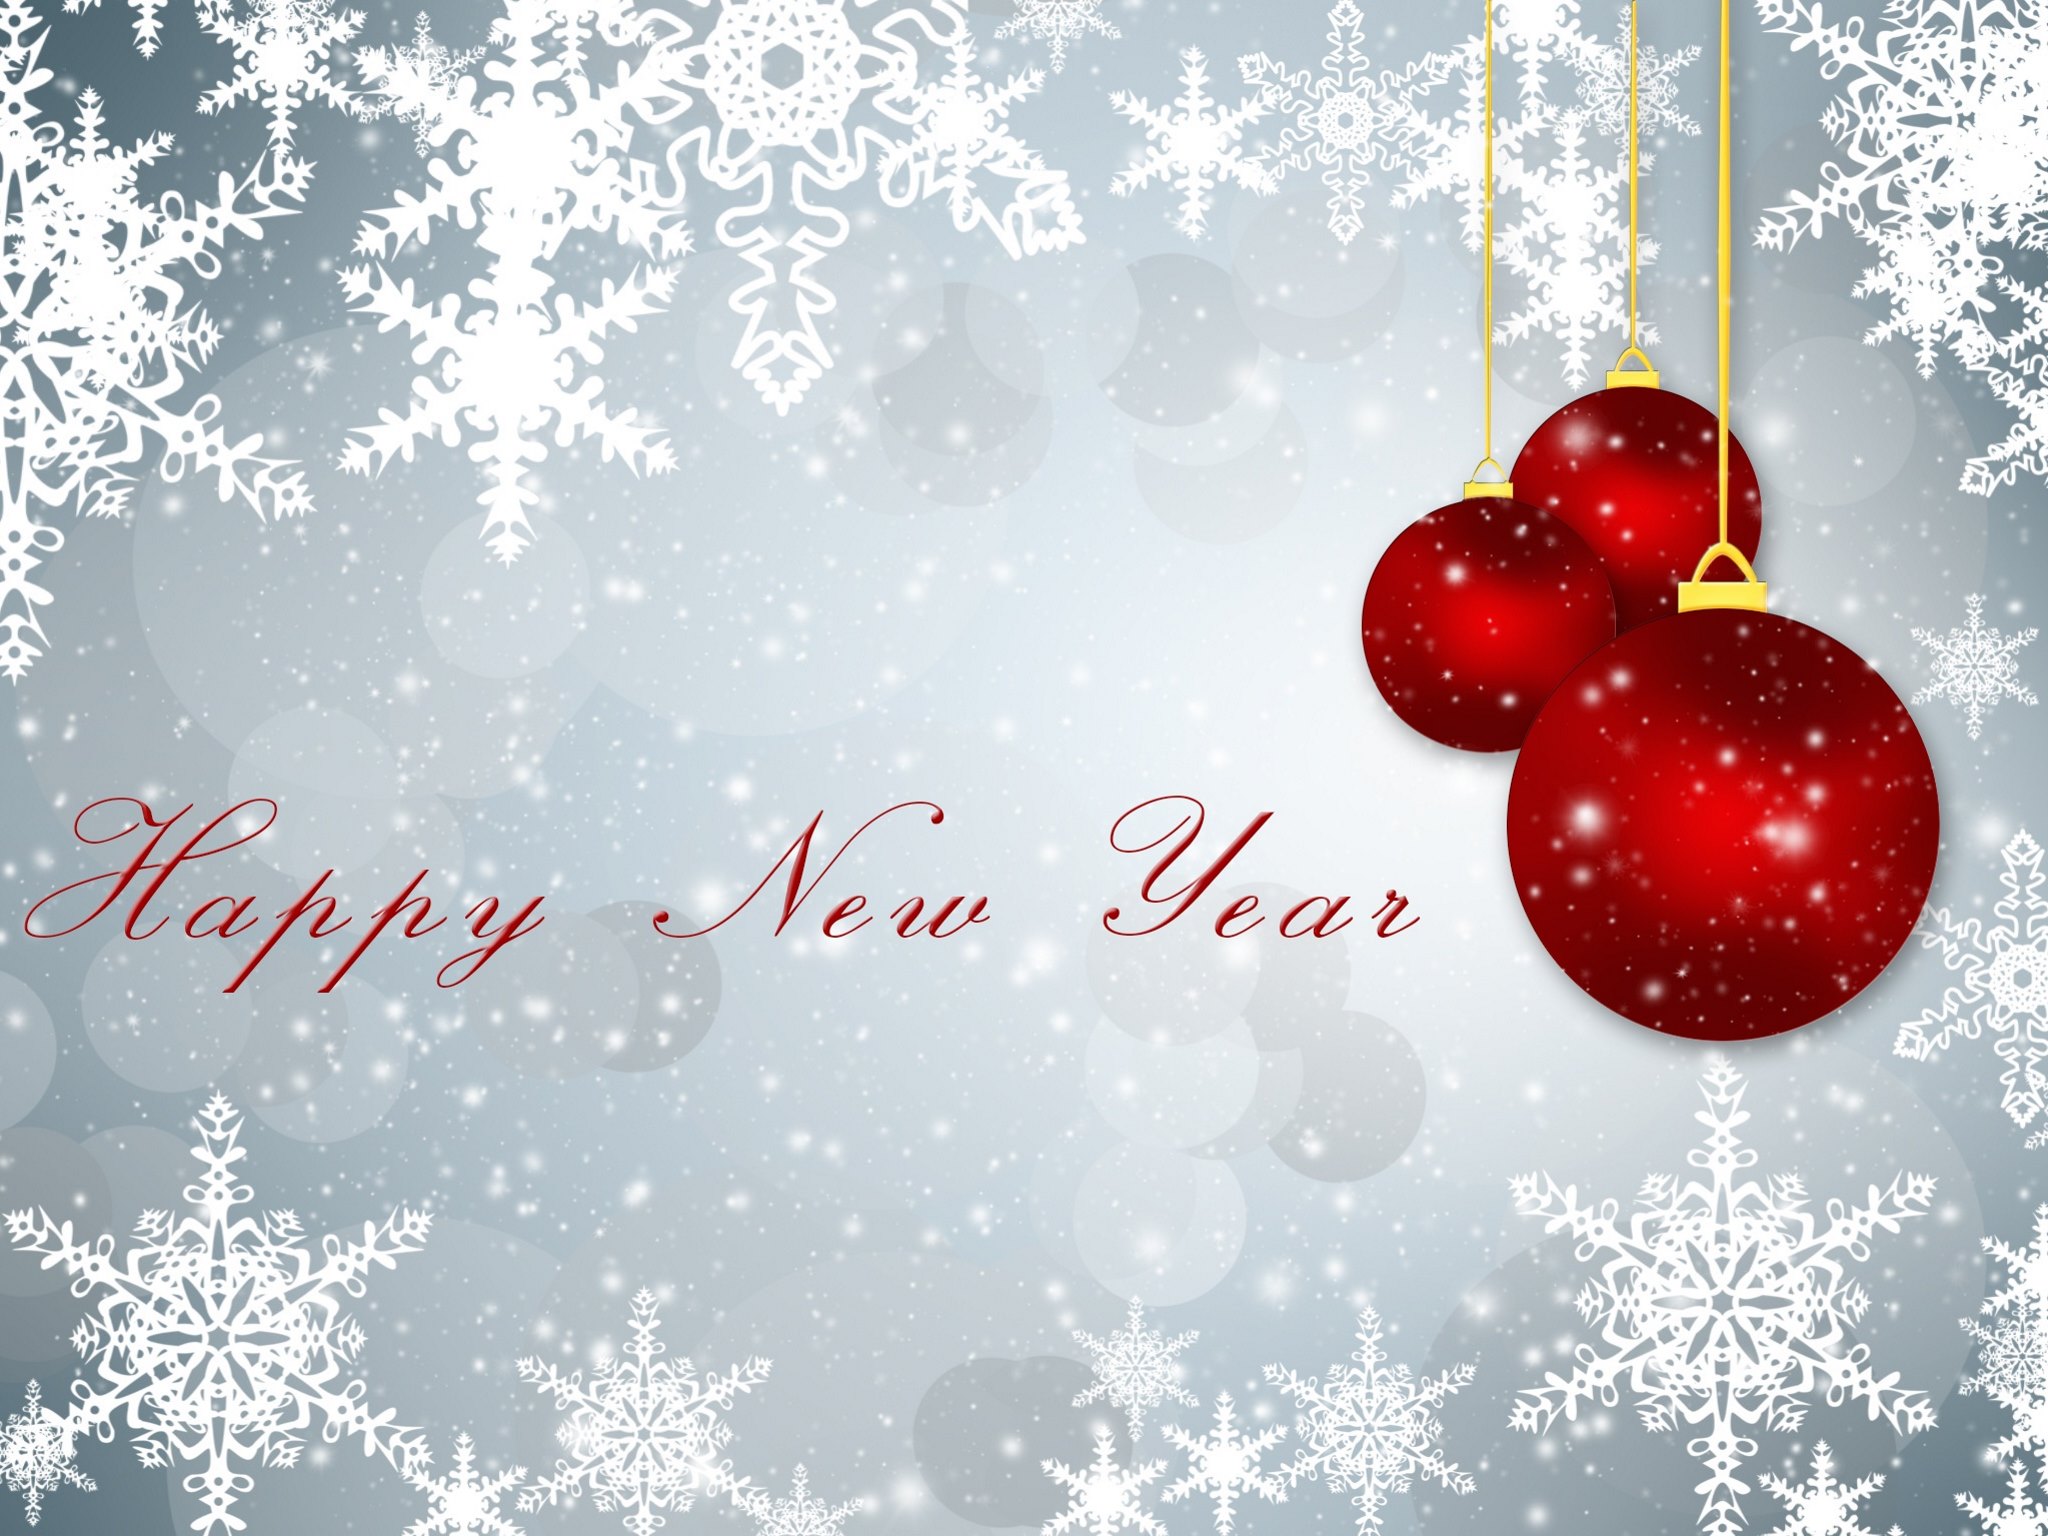 Happy New Year Everyone by Ljiljana Smilevski